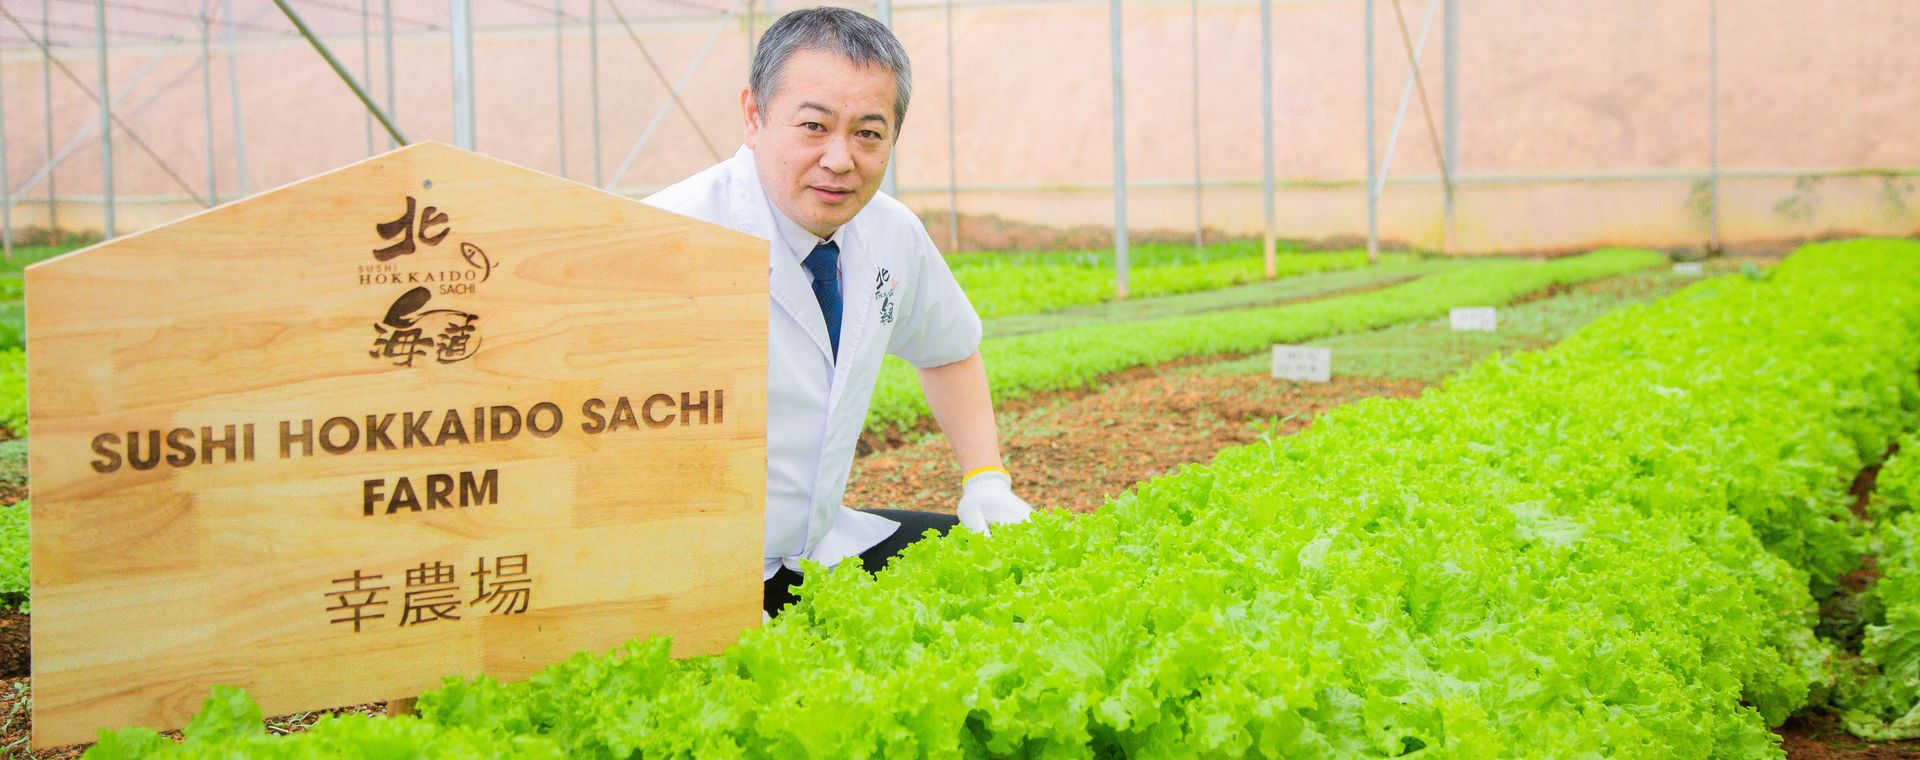 <span>Sushi Hokkaido Sachi Farm - Journey from farm to table</span>